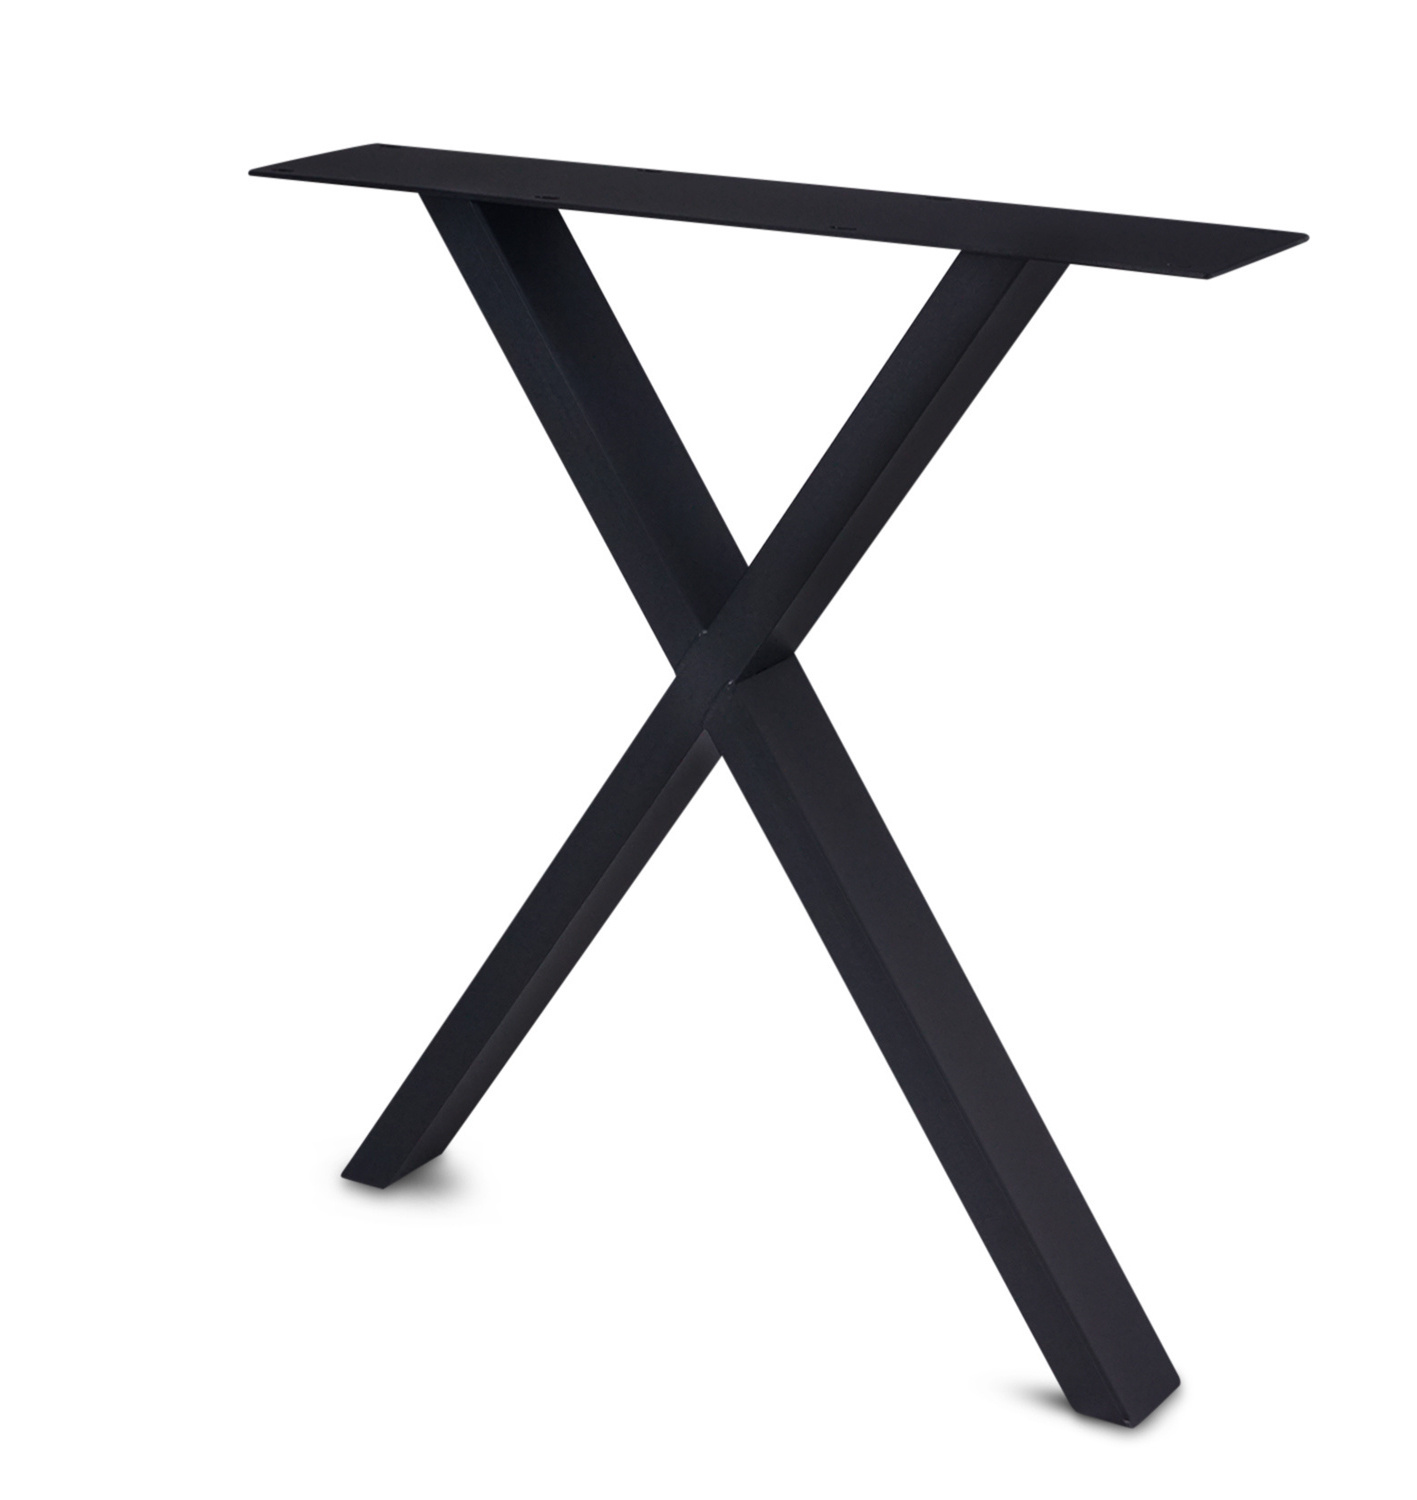  Schreibtischbeine X Metall elegant SET (2 Stück) - Bürotisch / Schreibtisch Beine / Füße - 10x4 cm - 60 cm breit - 72 cm hoch - X-form Schreibtisch Gestell beschichtet - Schwarz